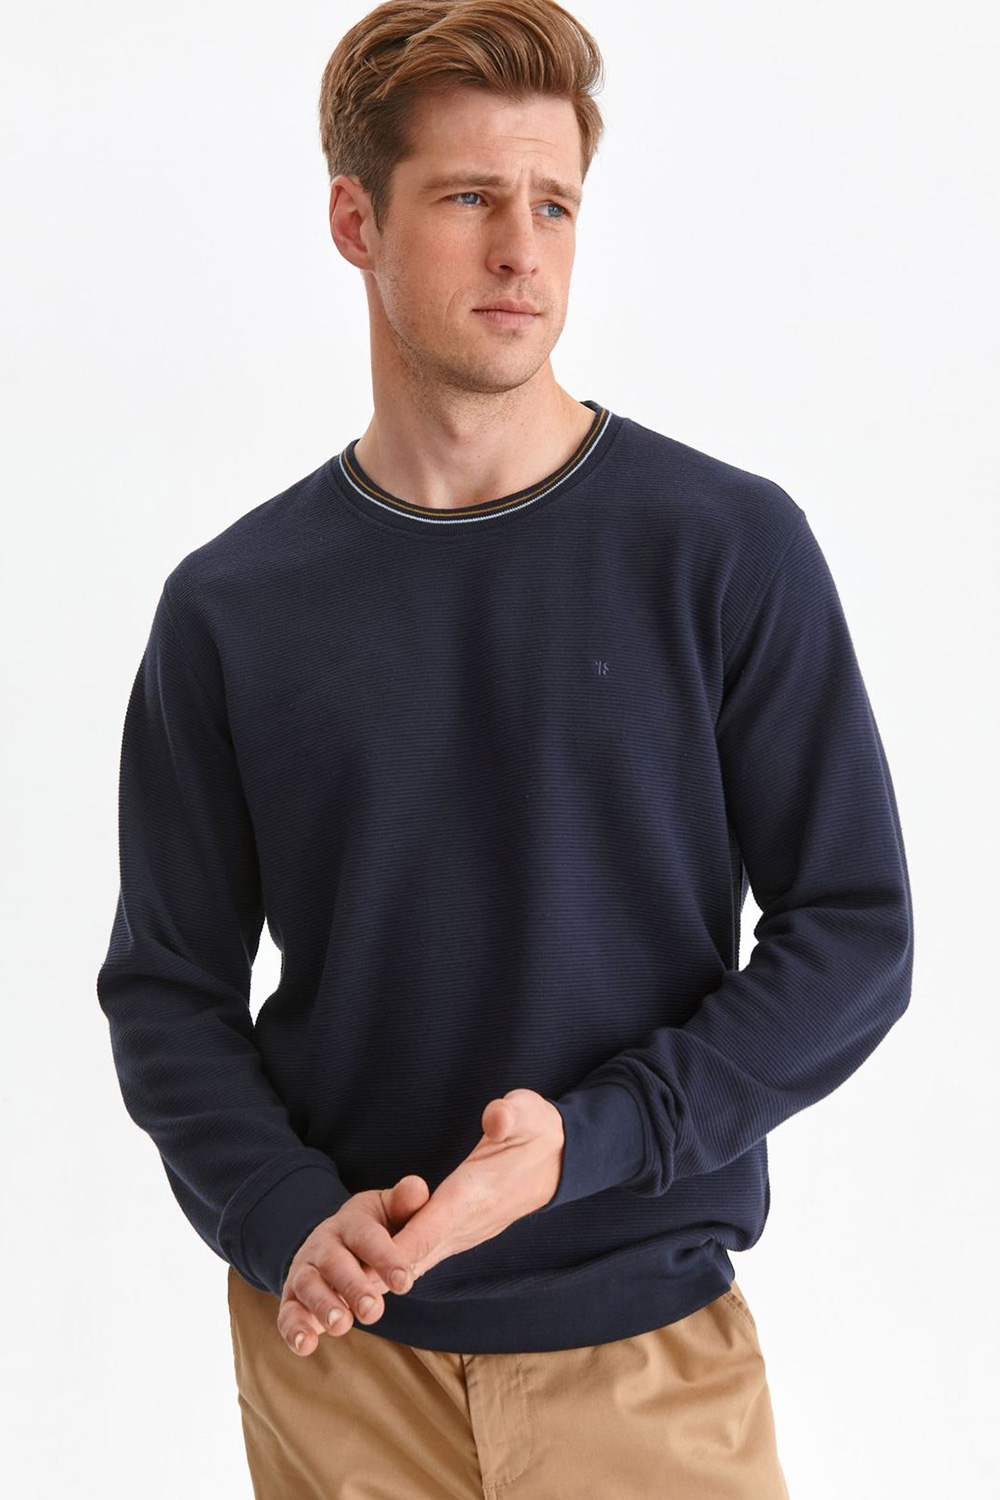 Sweatshirt model 174315 Top Se..